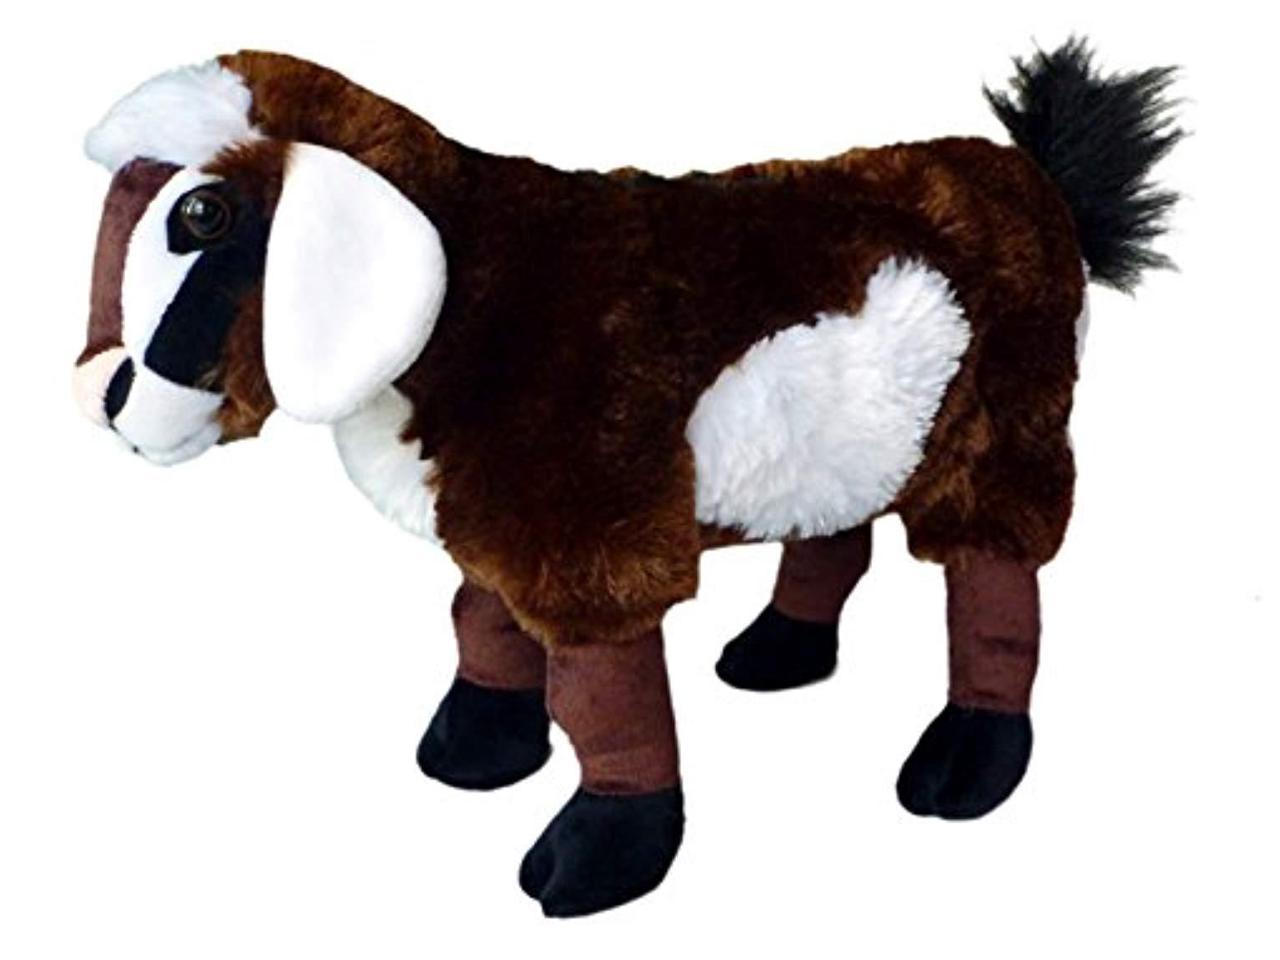 pygmy goat stuffed animal